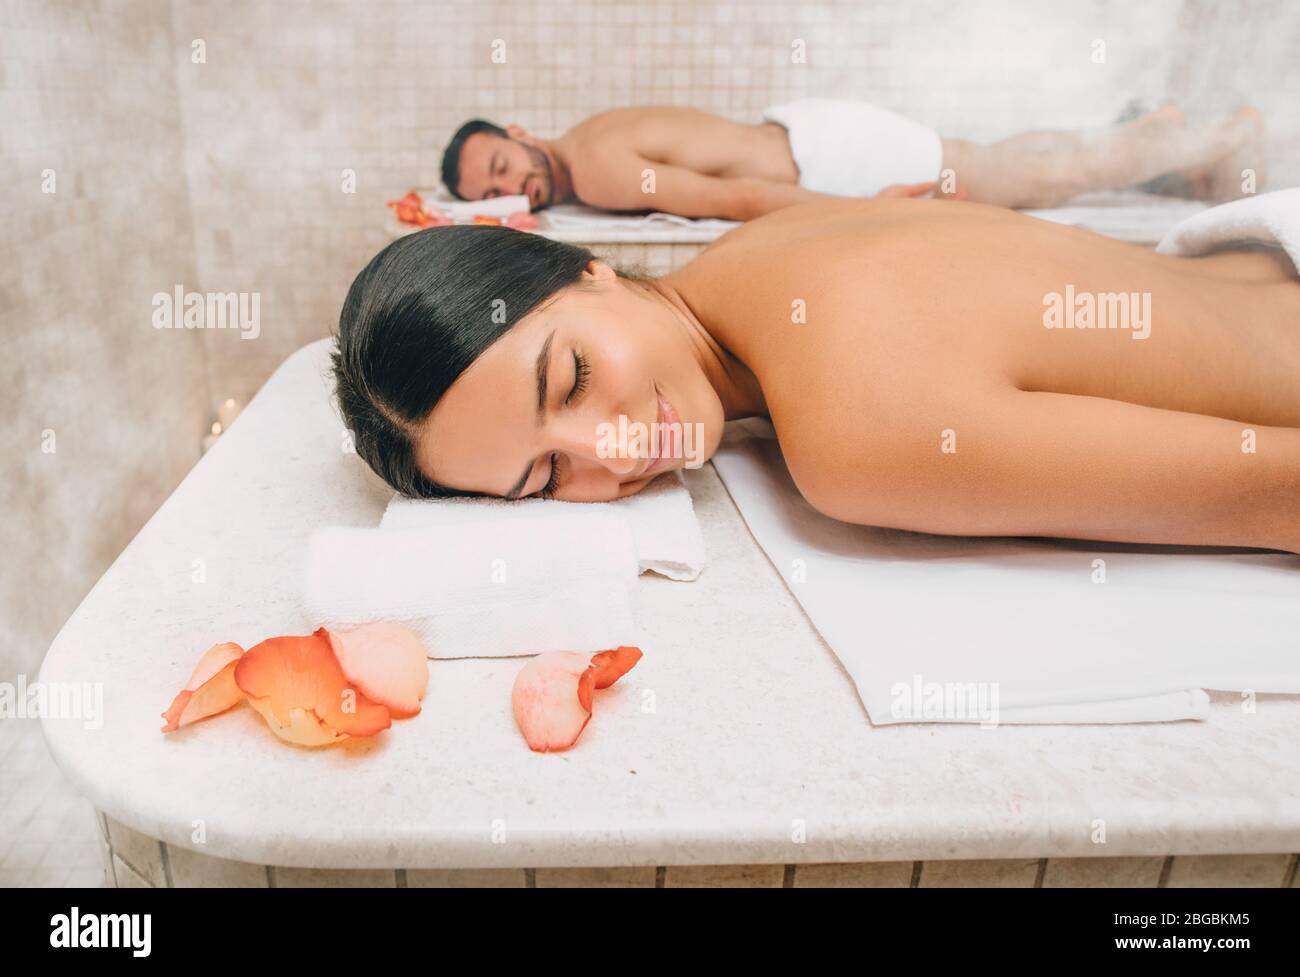 La table en marbre du hammam réchauffe le corps d'une belle femme avant un massage en mousse dans un bain turc. Hammam améliorer la peau et arrêter le processus de vieillissement Banque D'Images